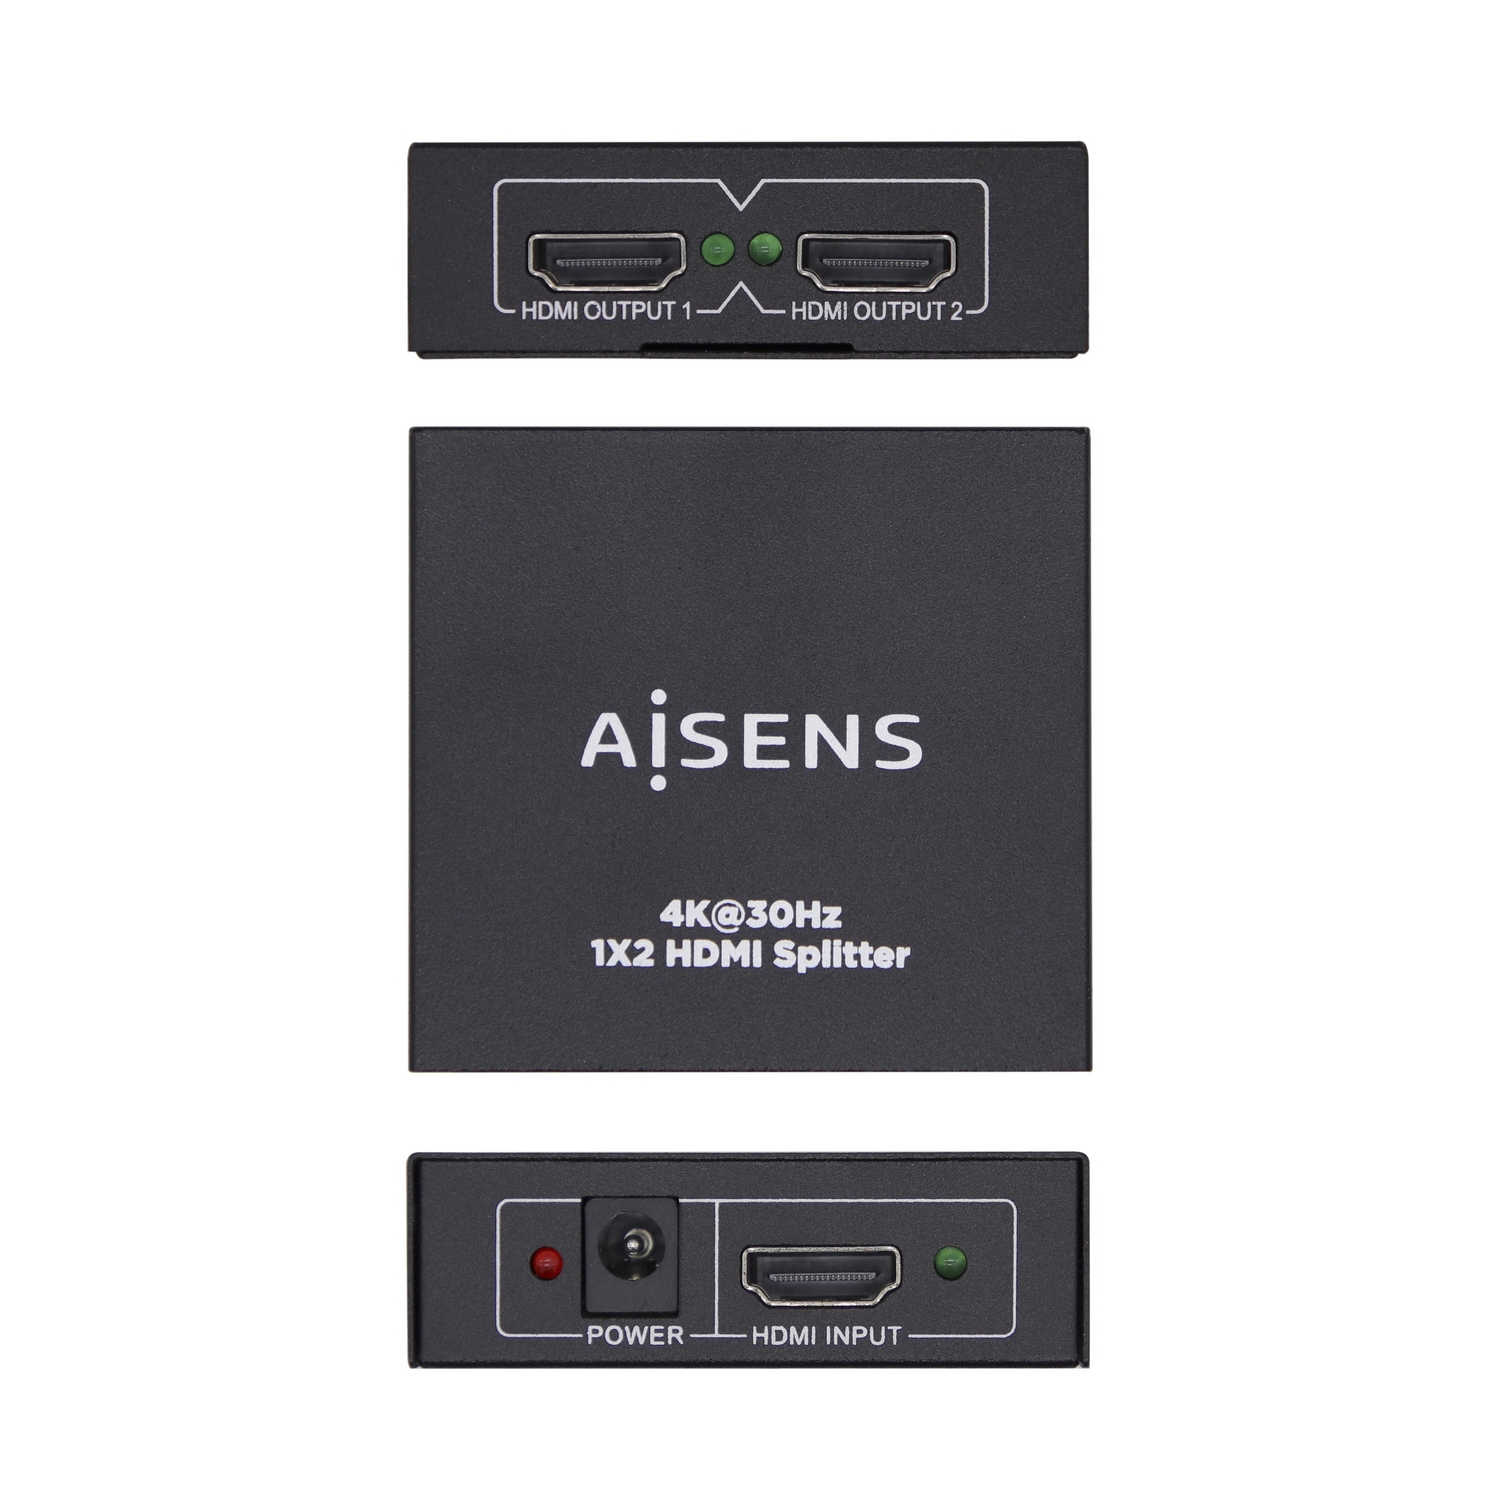 AISENS - HDMI Duplicador 4K@30HZ 1x2 con Alimentación USB y Cable